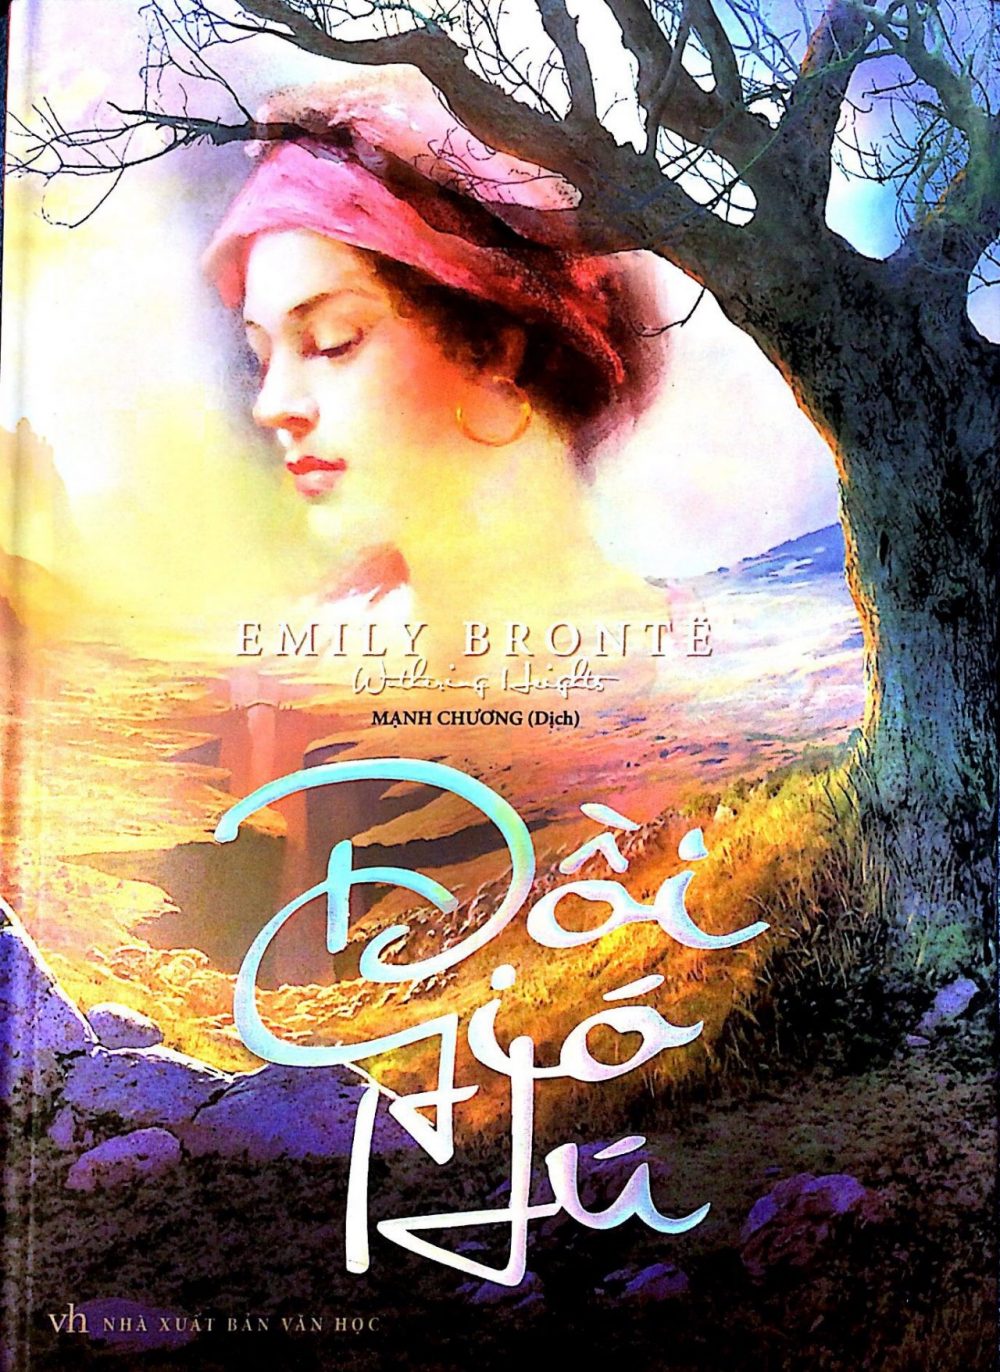 Câu chuyện tình yêu đầy đau đớn trong tác phẩm Đồi gió hú của Emily Bronte